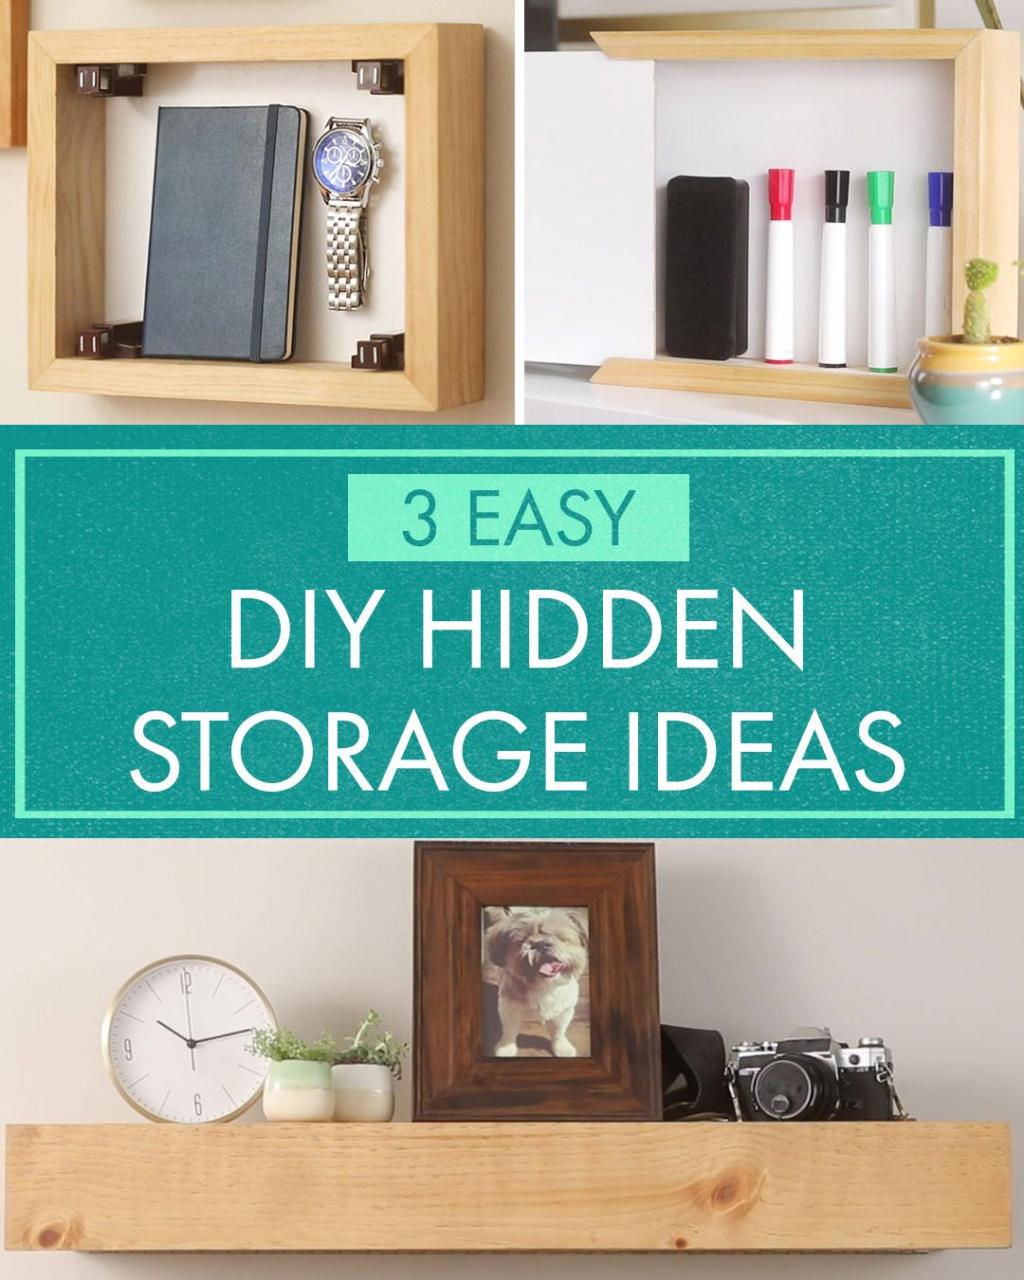 3 HiddenStorage Ideas Diy hidden storage ideas, Hidden storage, Diy